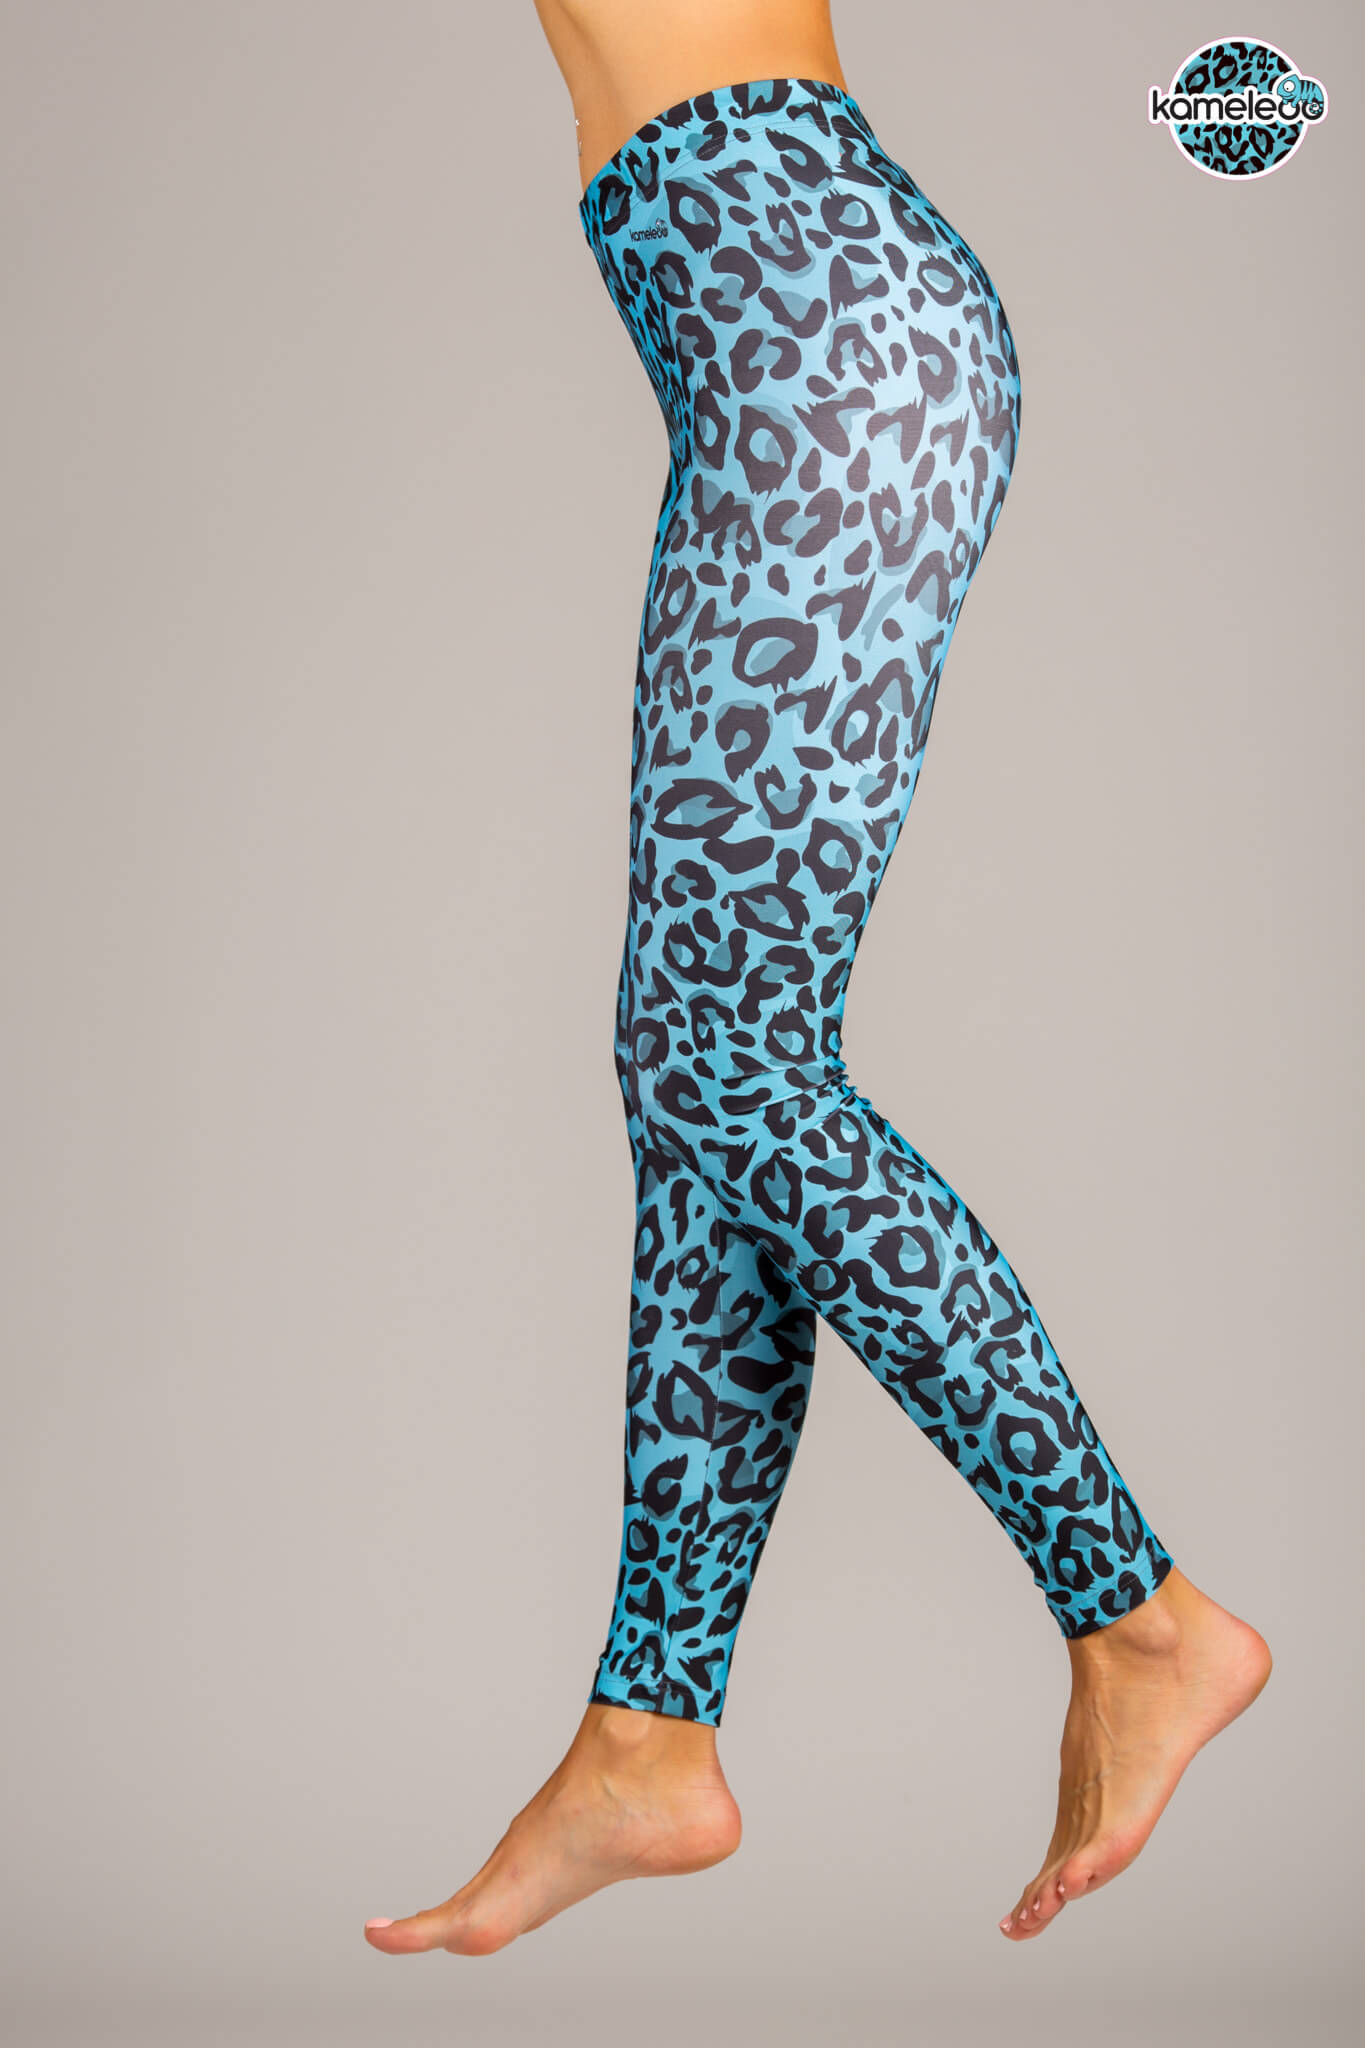 Leopardo Coloridoo Training Leggings - Turquoise